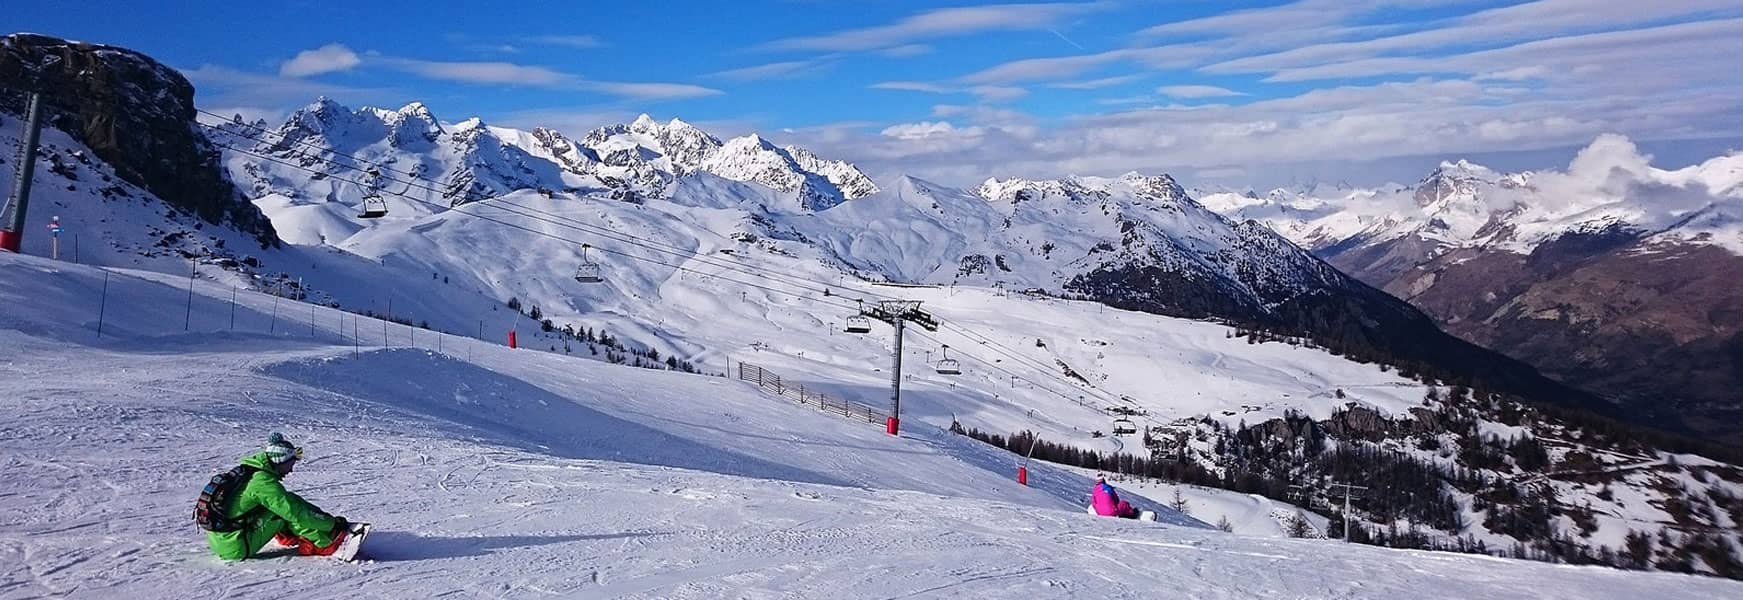 Location Ski Intersport Monetier Serre Chevalier 1500